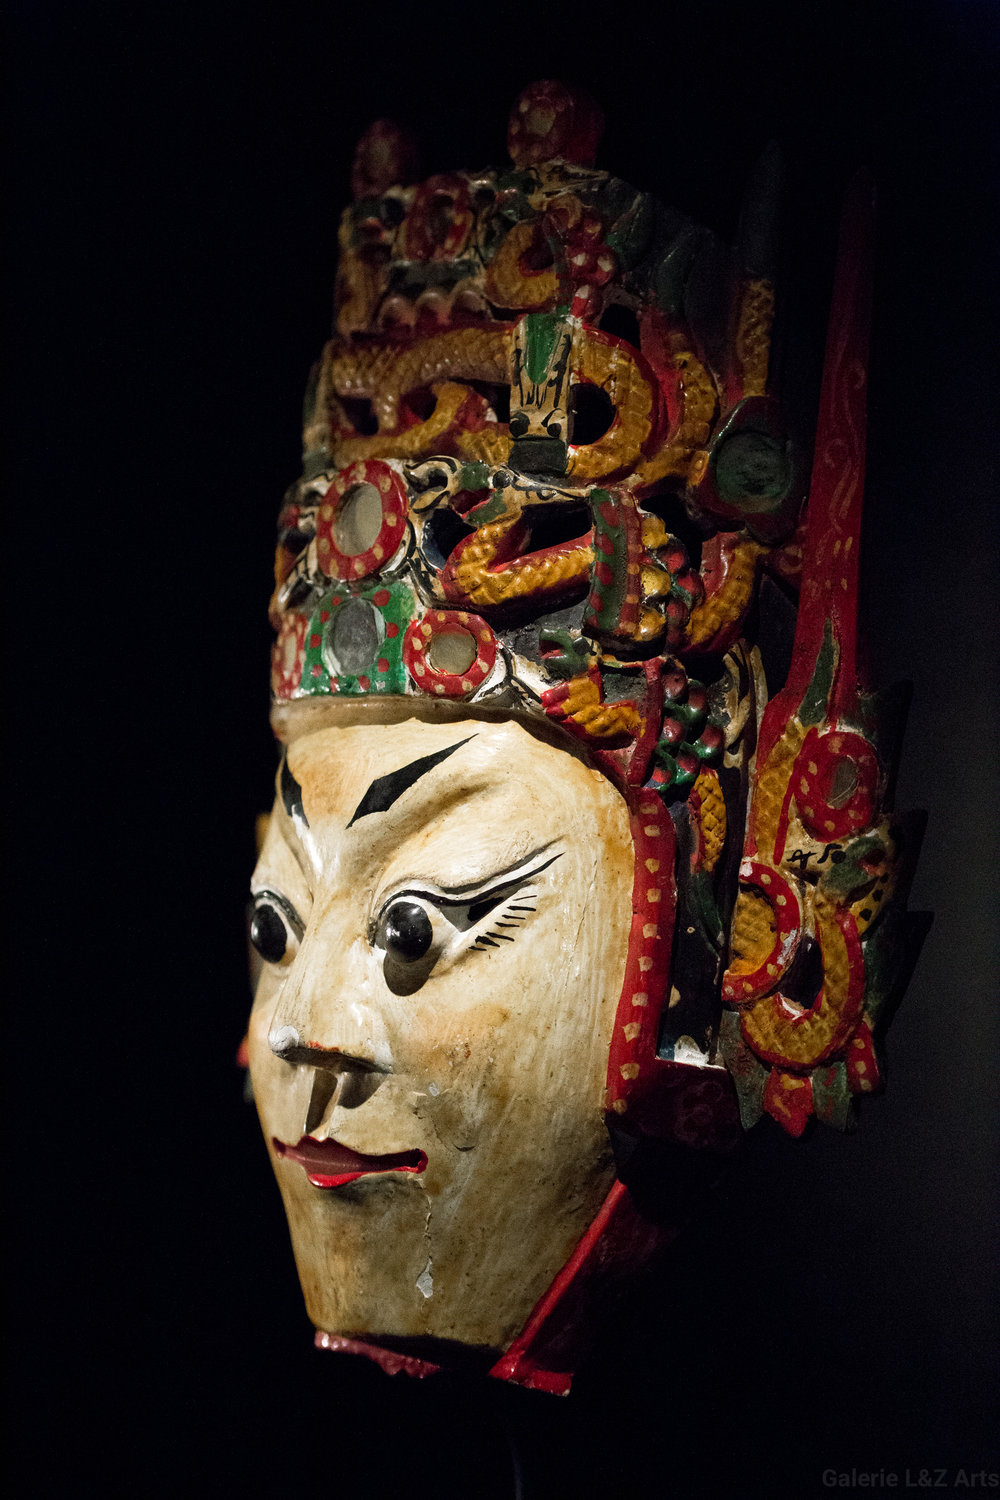 exposition-masque-art-tribal-africain-musee-quai-branly-belgique-galerie-lz-arts-liege-cite-miroir-oceanie-asie-japon-amerique-art-premier-nepal-38.jpg